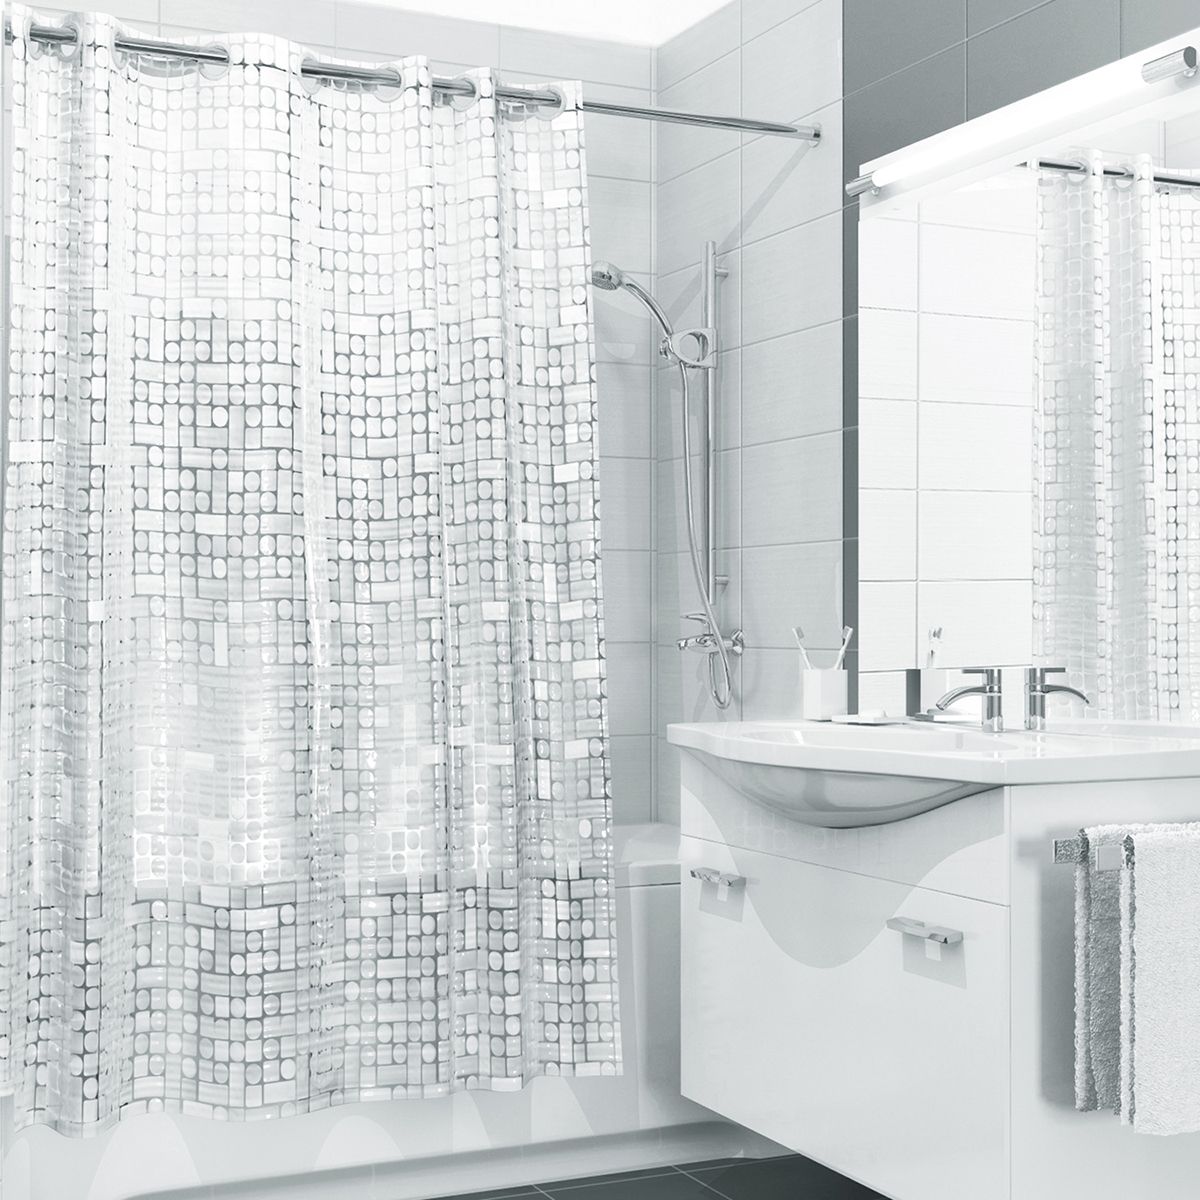 Шторки для ванной 180. Штора для ванной Dasch "la Vita 3d", цвет: прозрачный. Штора для ванной комнаты с кристаллическим эффектом, 180*180 см, Valiant. Valiant White Shine. Штора для ванной Valiant.